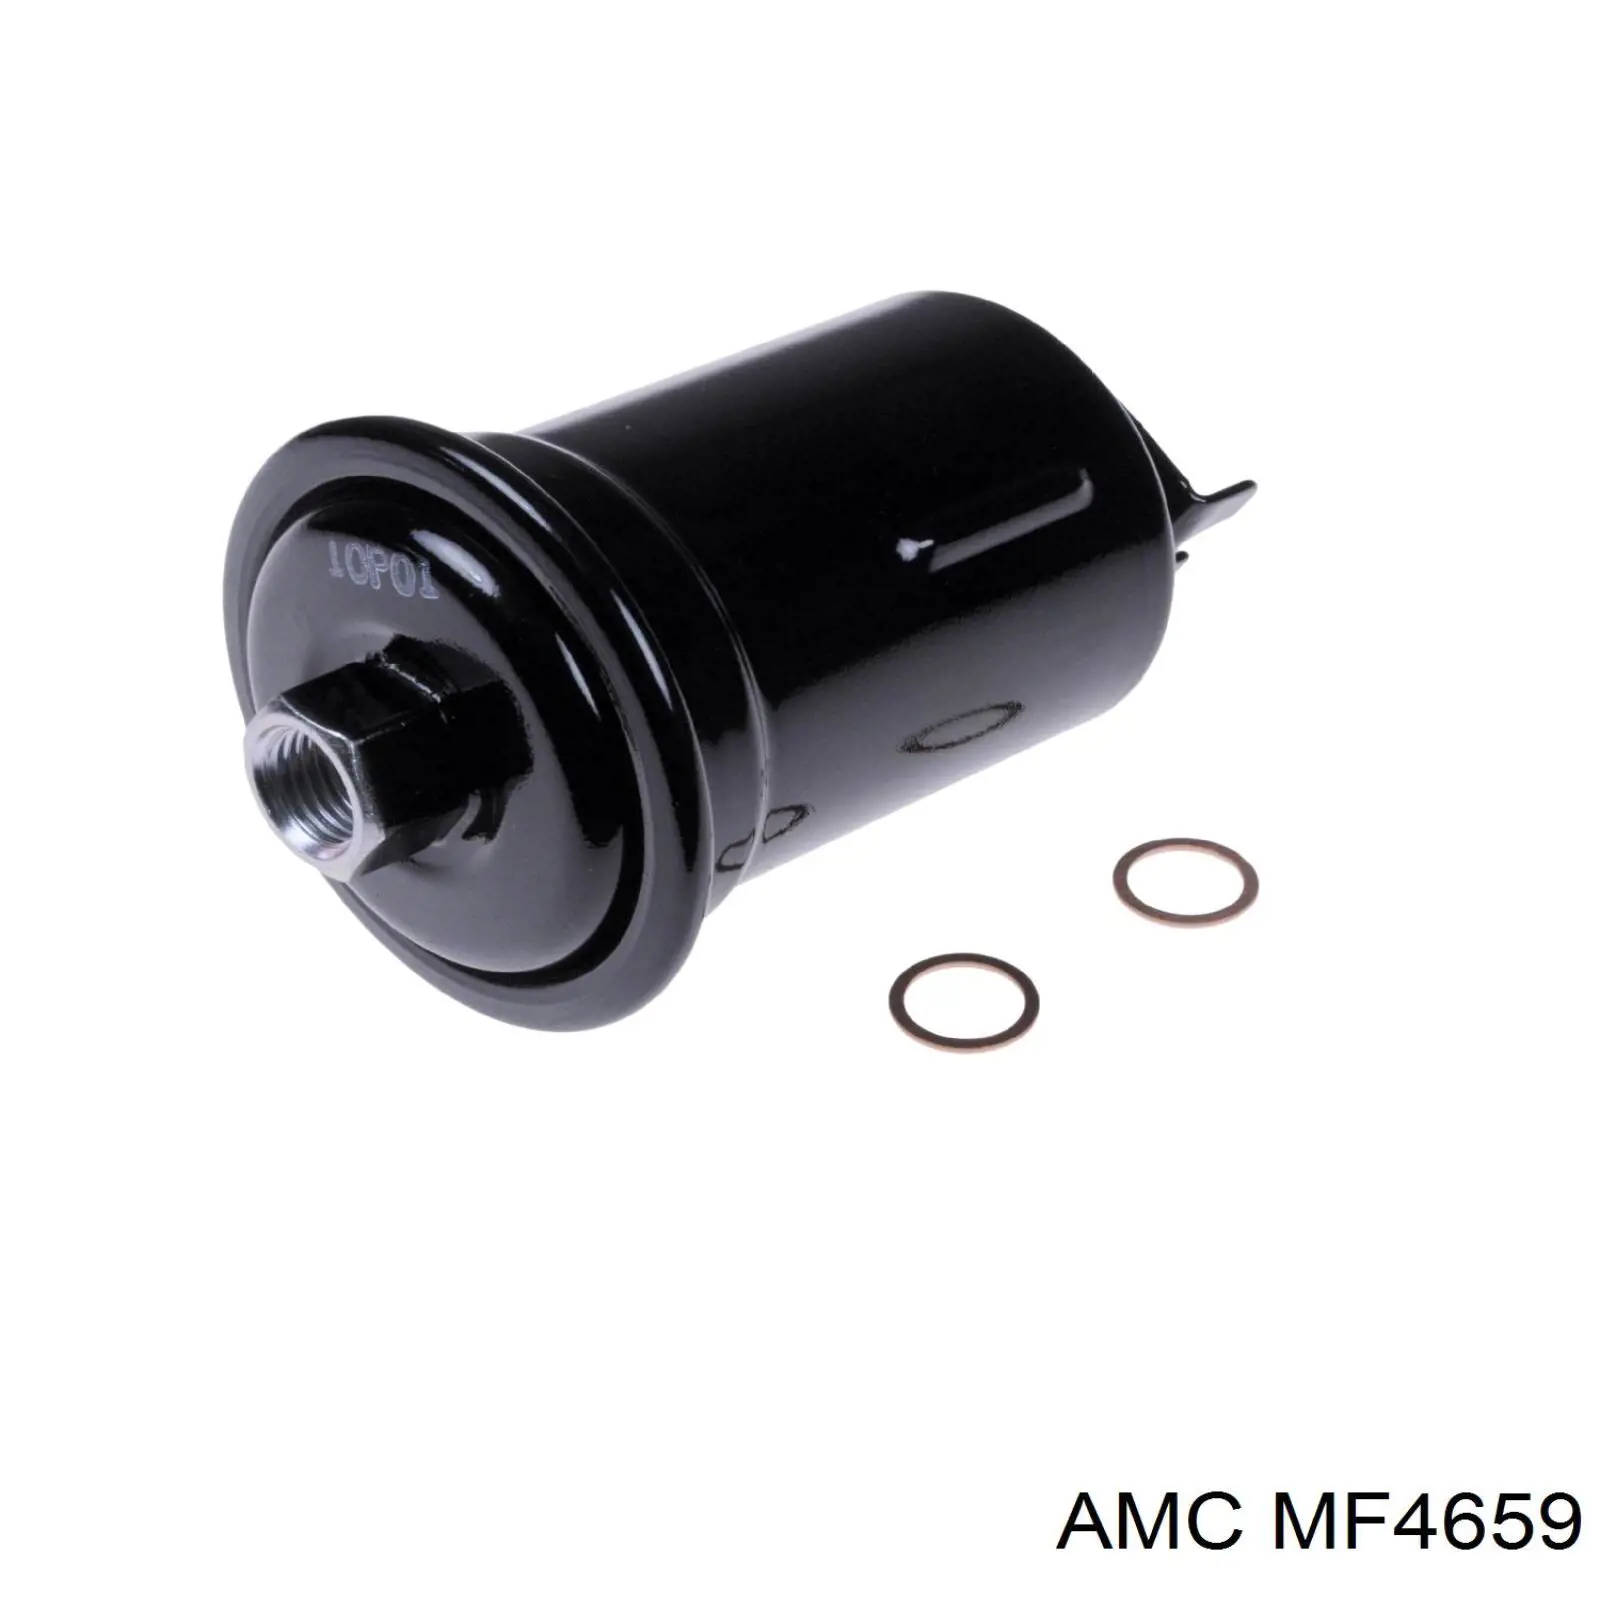 MF-4659 AMC filtro de combustible